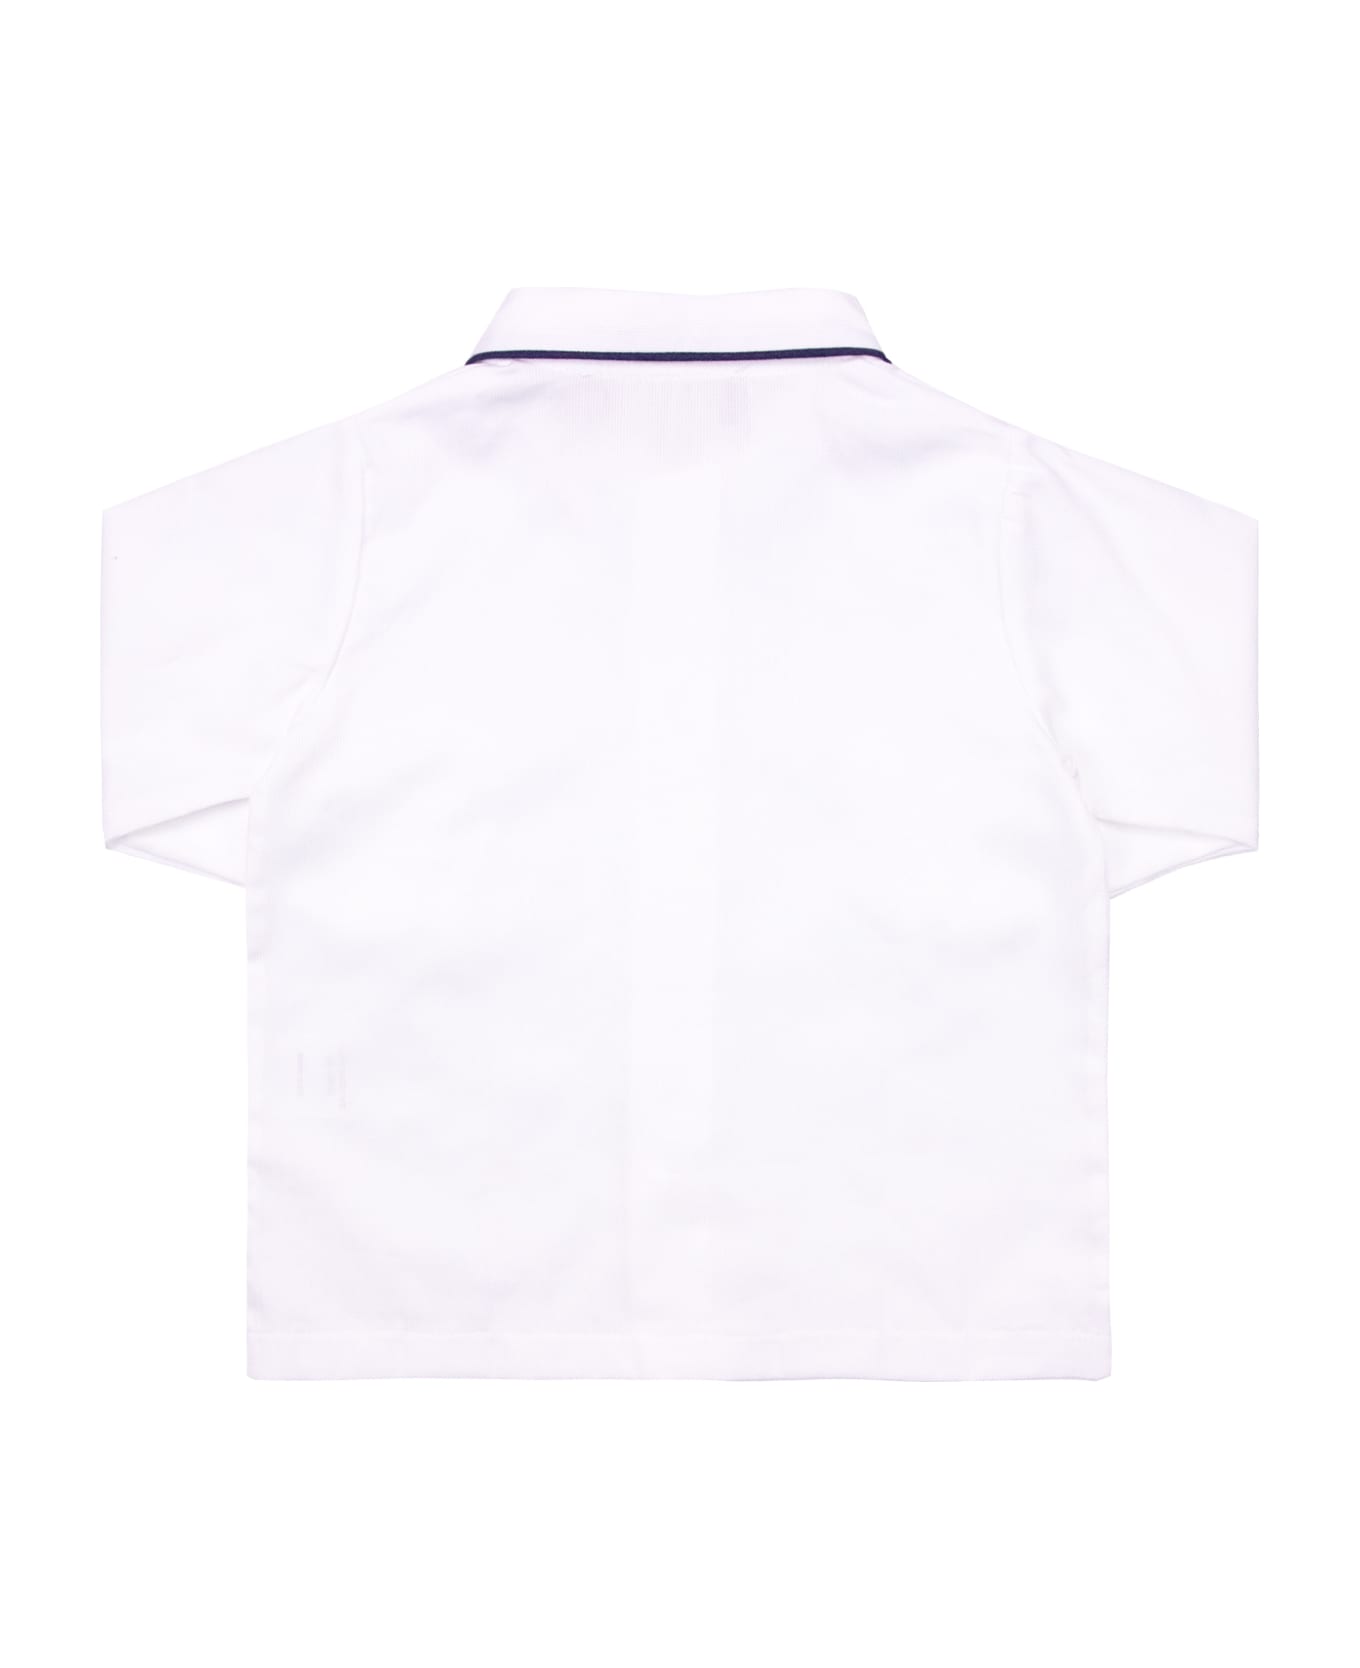 La stupenderia Cotton Shirt - White